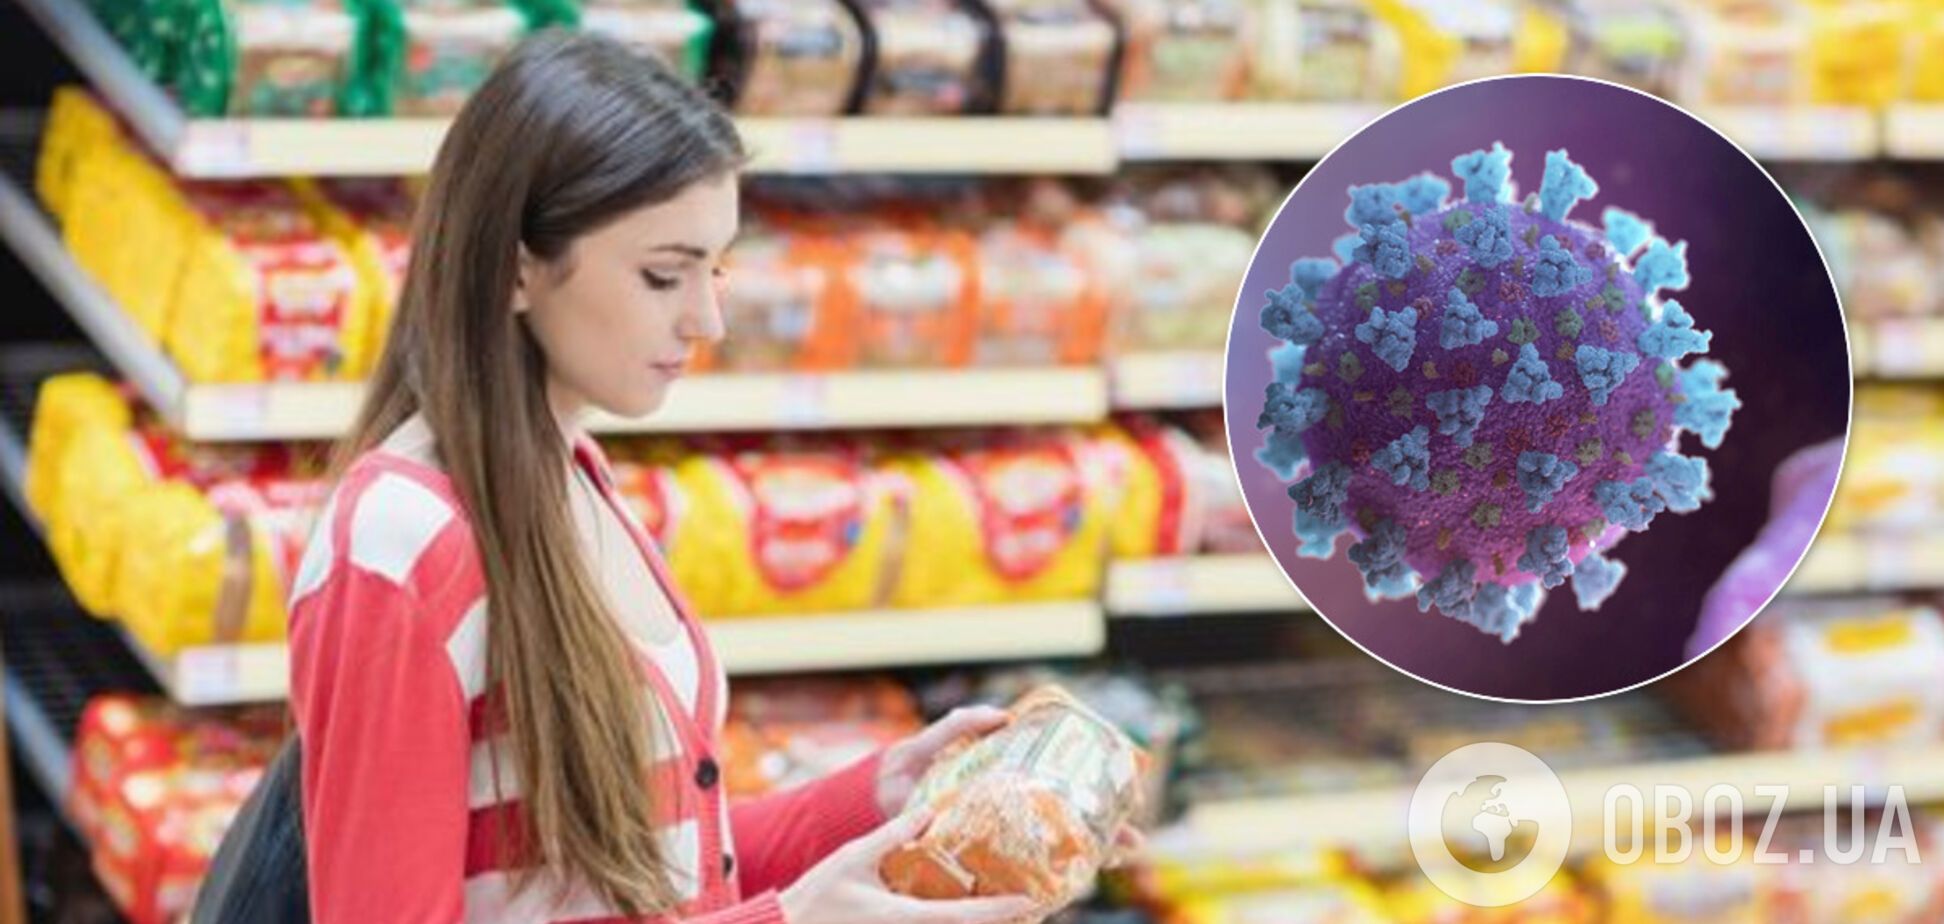 Можно ли заразиться коронавирусом через продукты: специалисты дали ответ